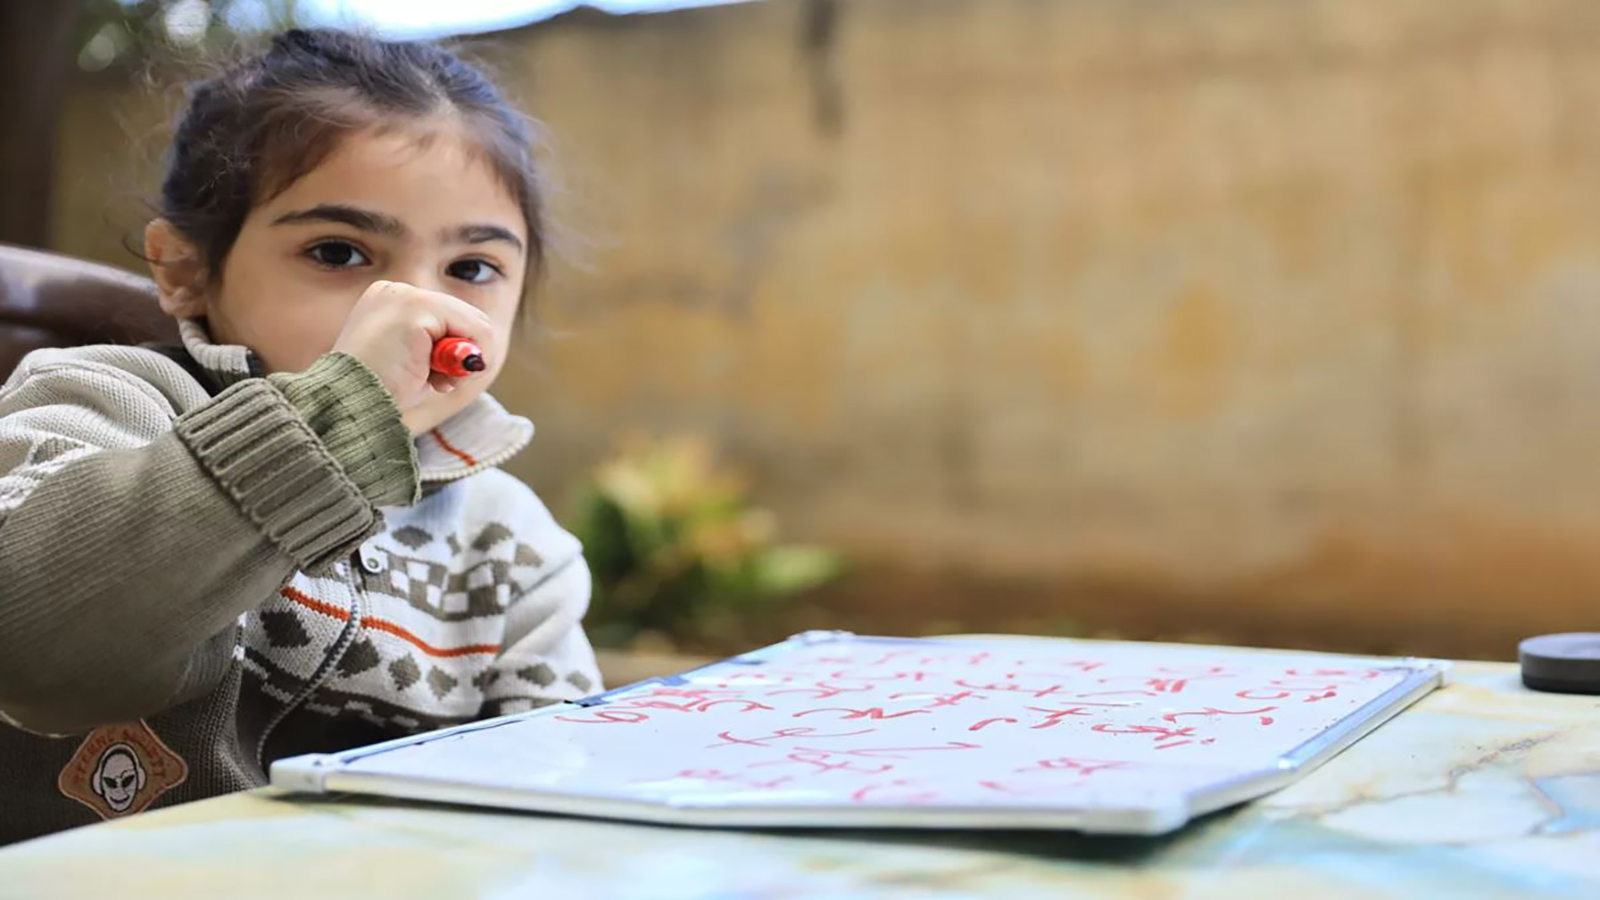 تسلح الطفل السوري ذو الخمسة أعوام بقلم ملون ونجح في كتابة أول كلمة في حياته حين كان عمره سنتين فقط (التواصل الاجتماعي)